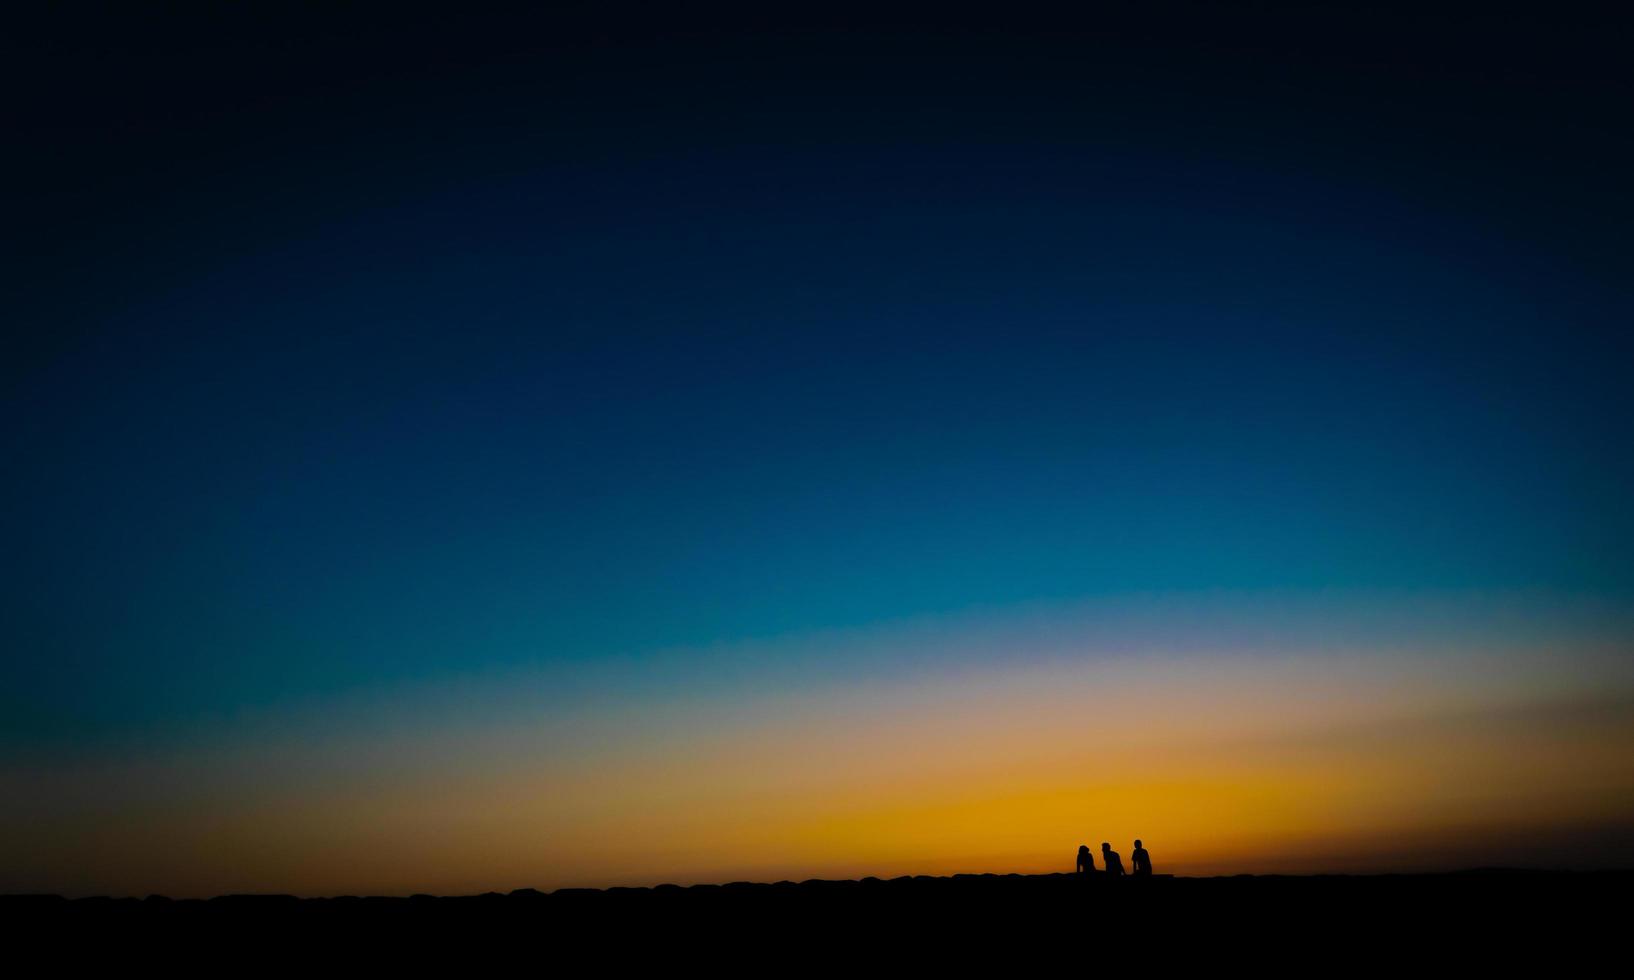 imagen de estilo de bellas artes de tres personas esperando la puesta de sol foto